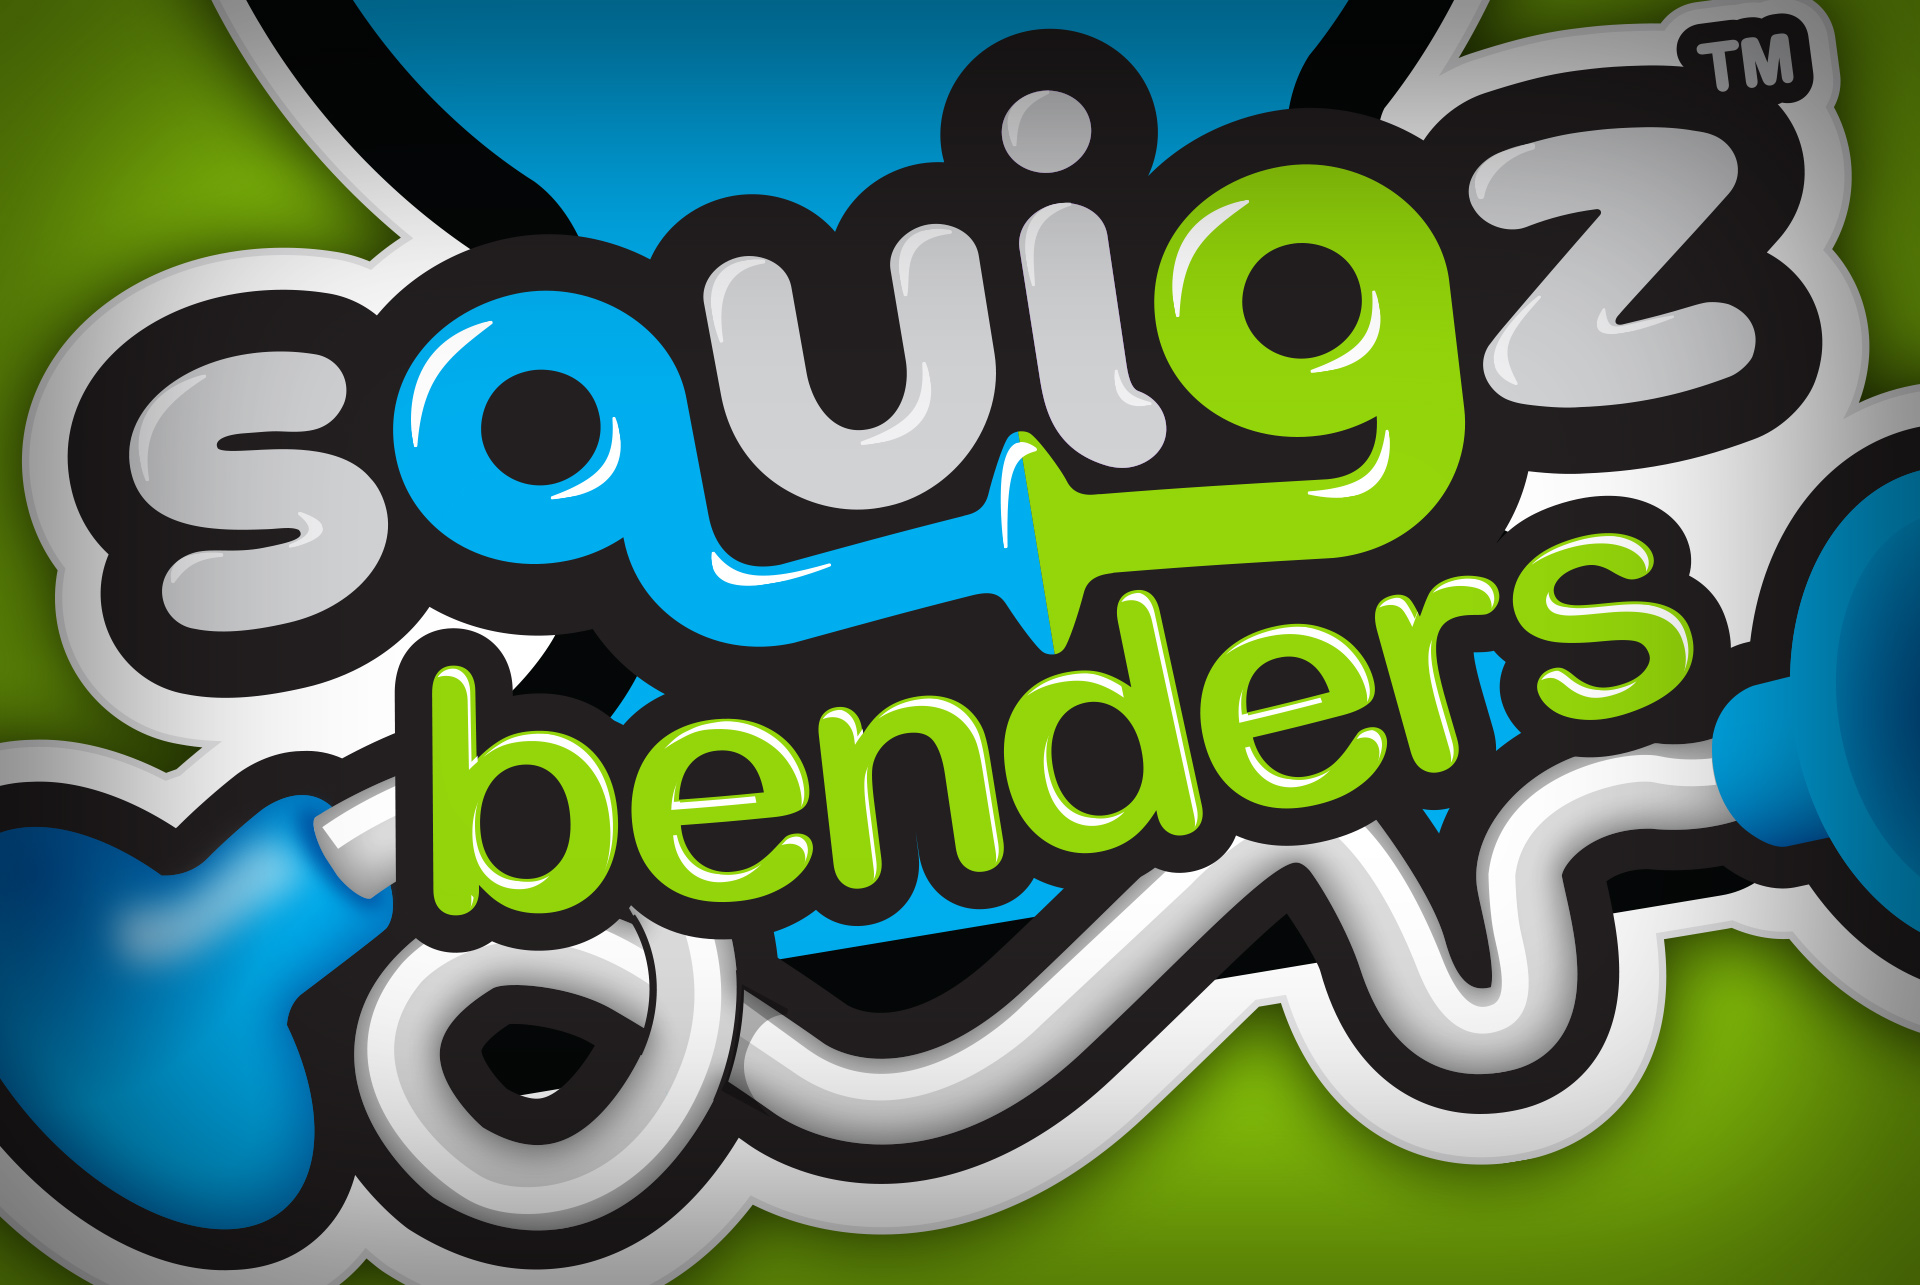 Squigz® Benders